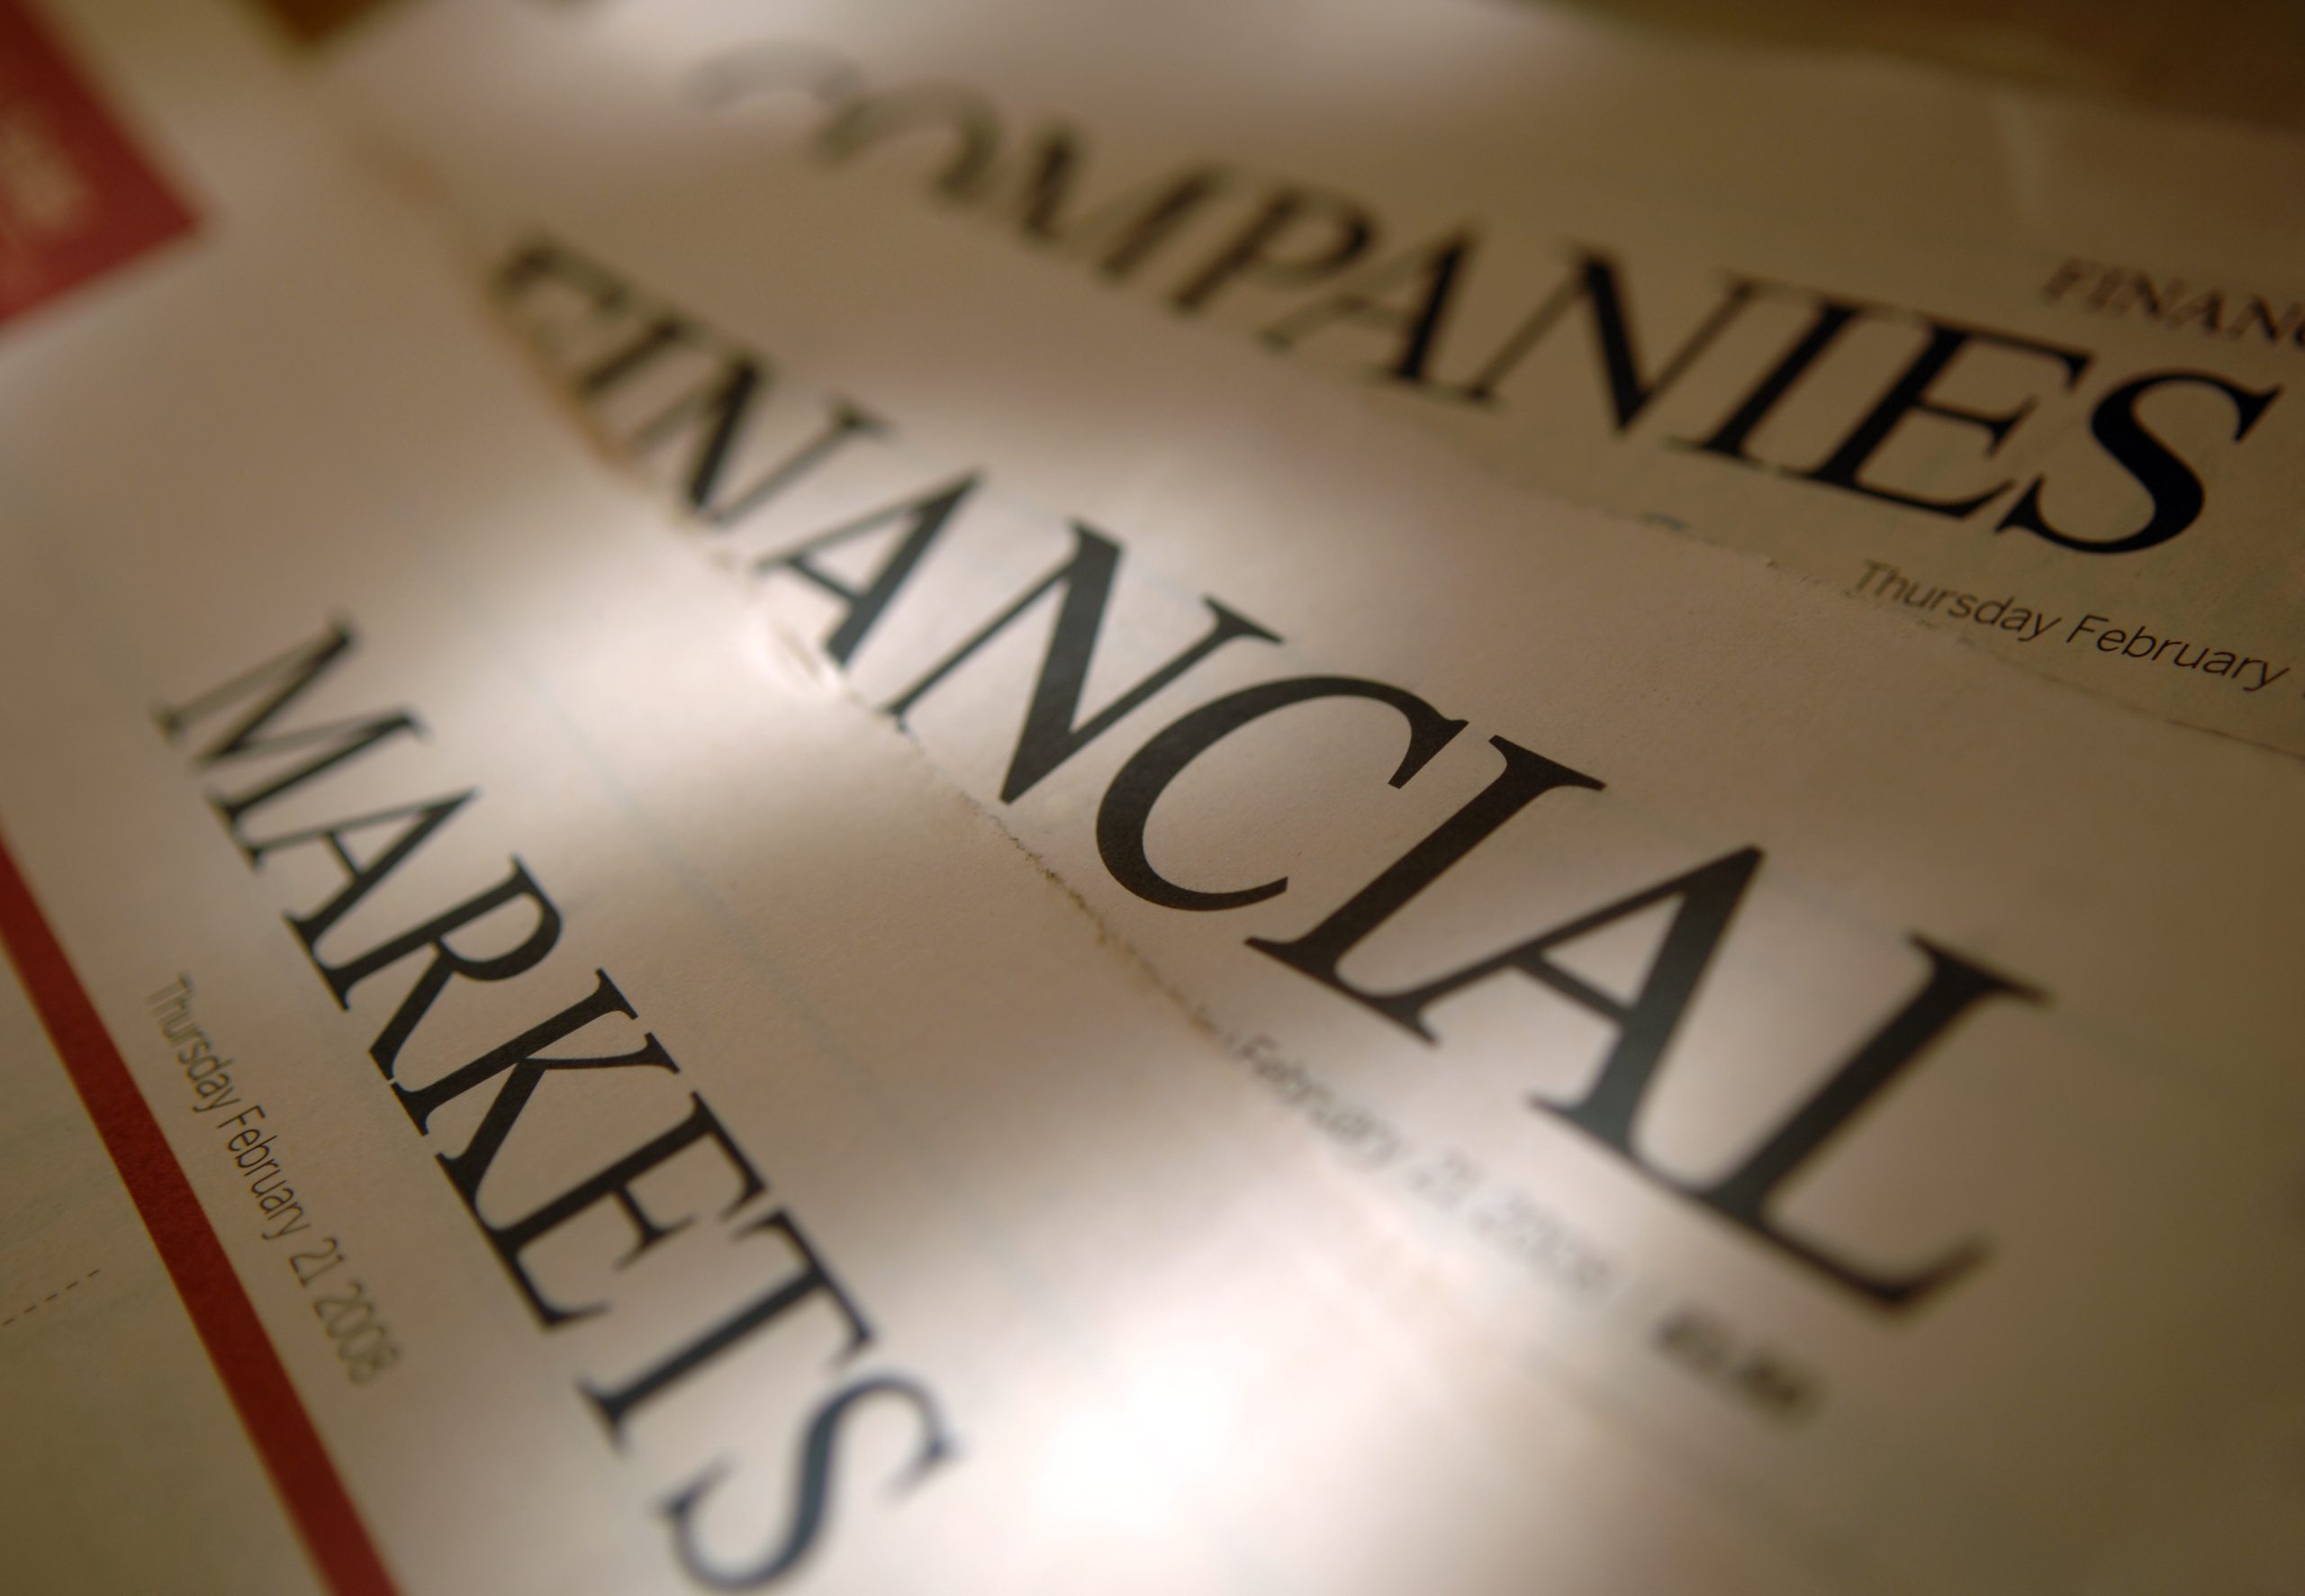 Financial Newspaper Titles